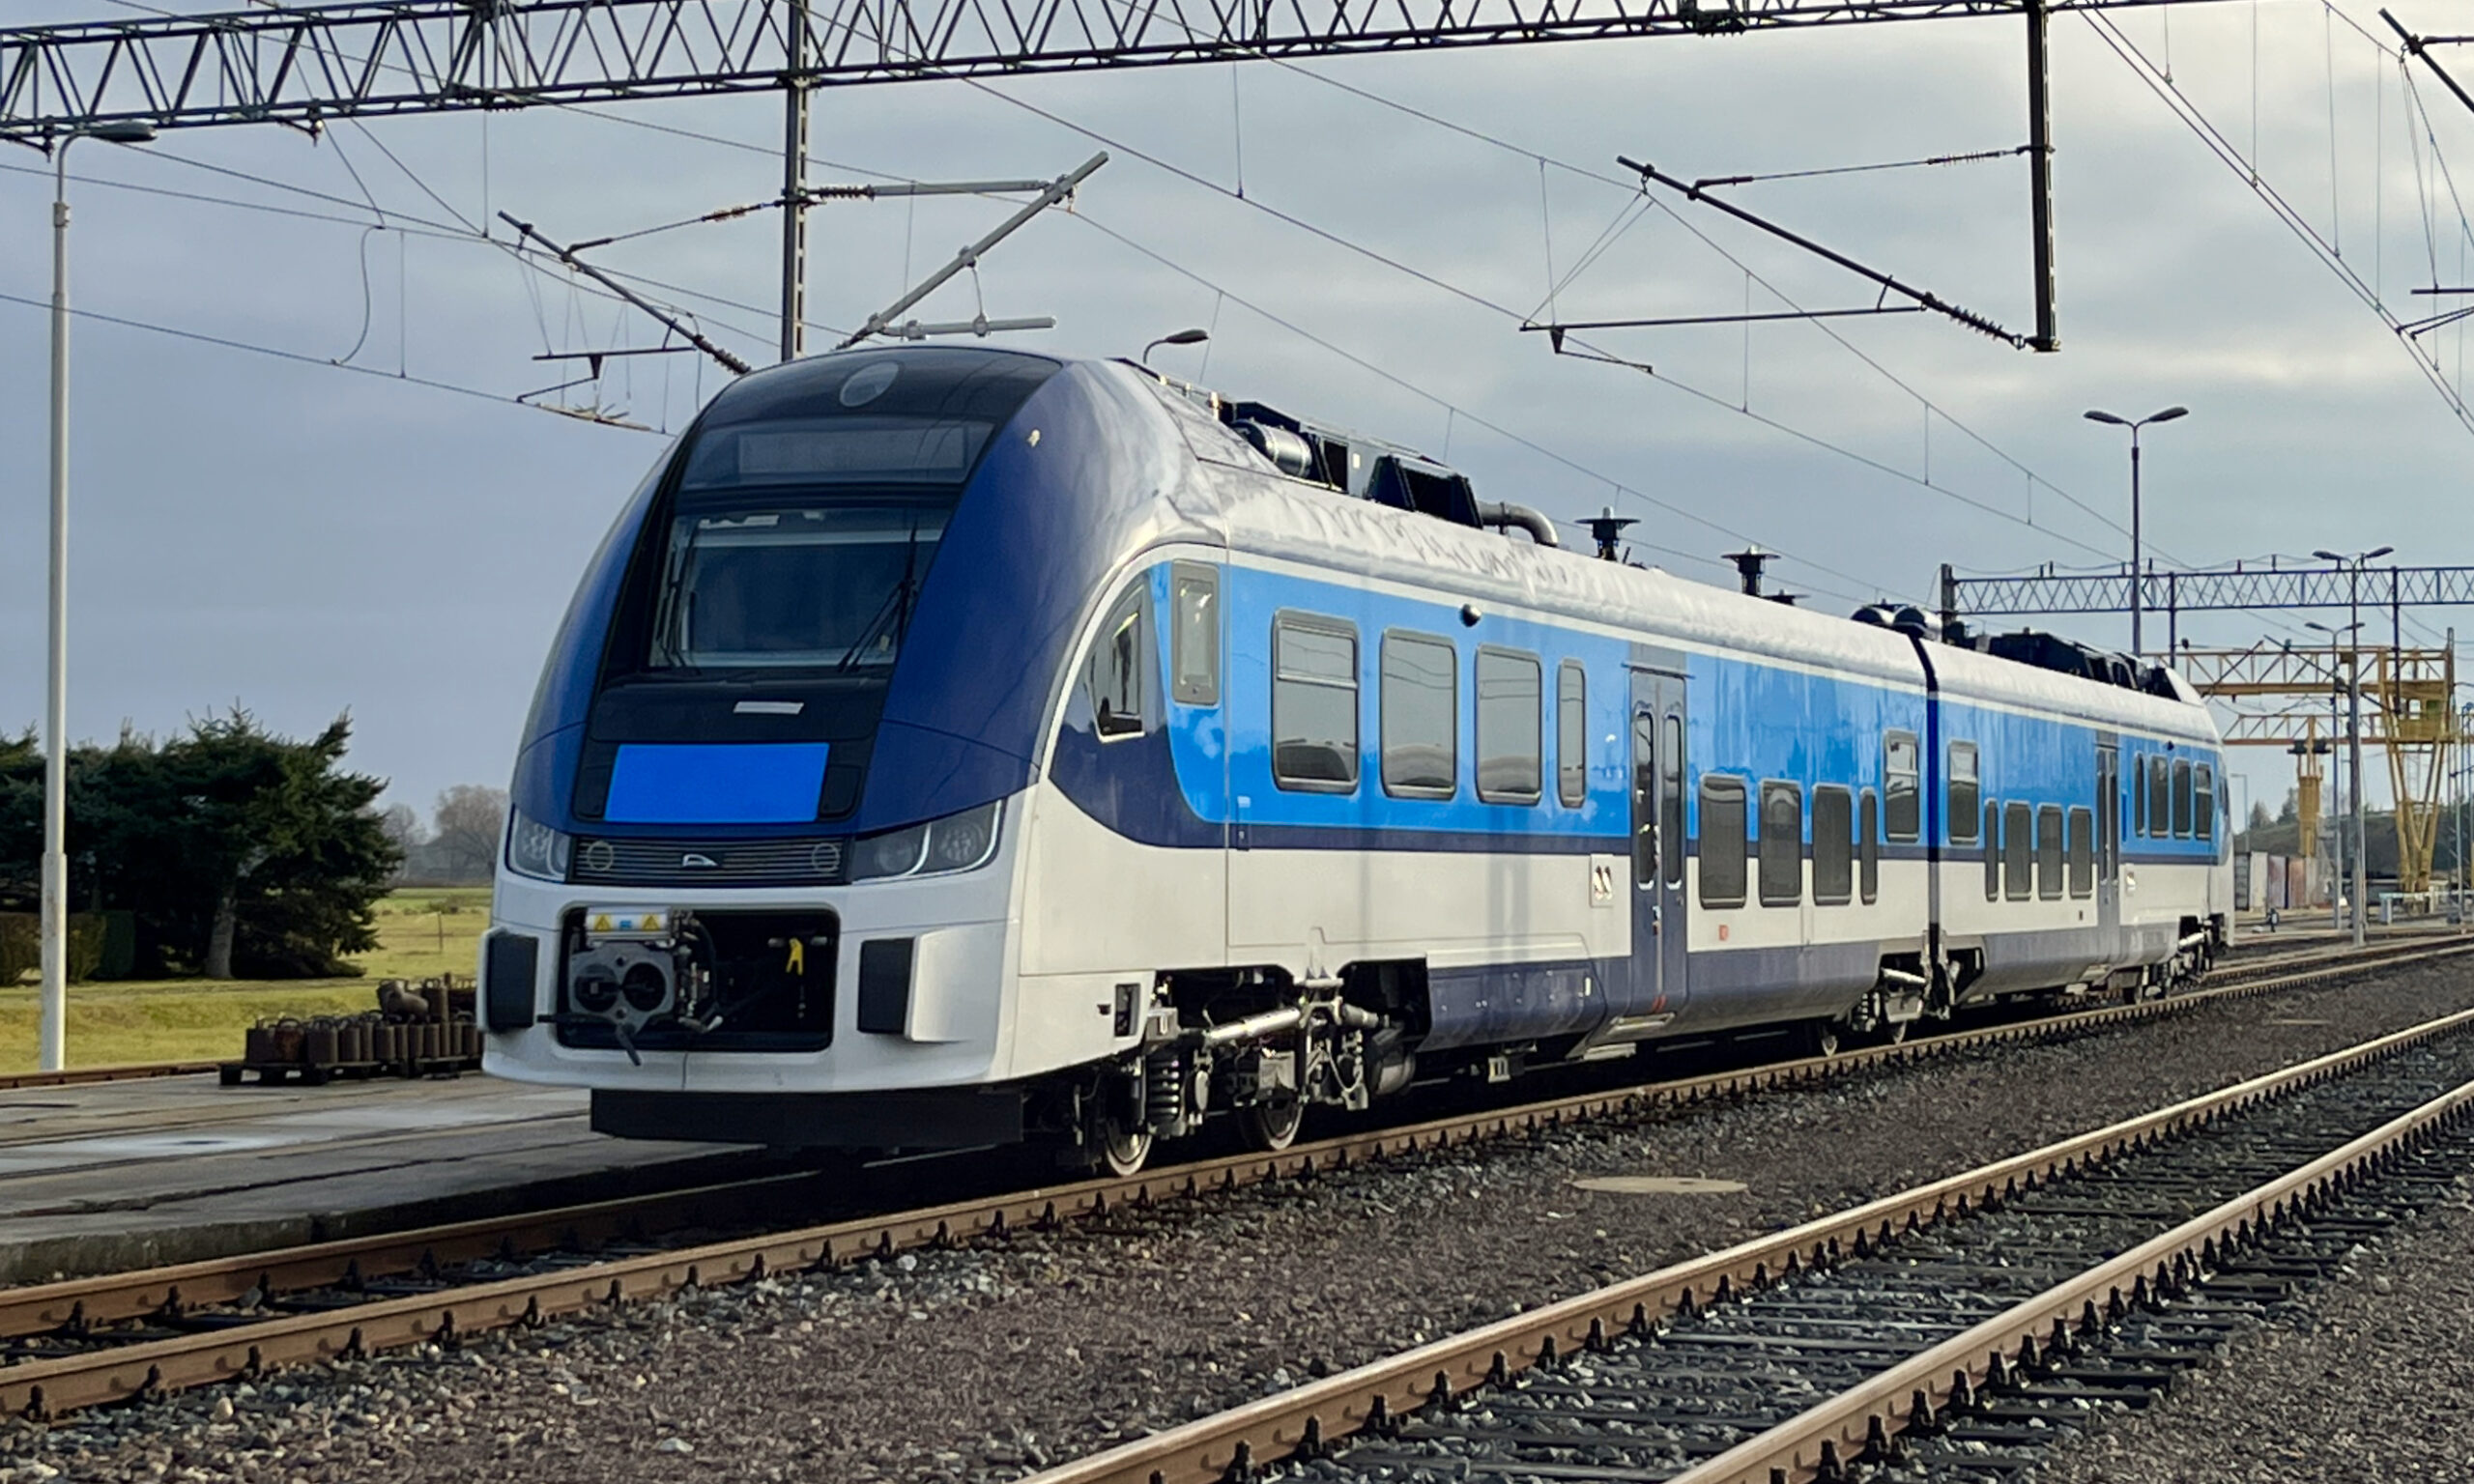 Testy pociągu w Żmigrodzie (fot. PESA Bydgoszcz)